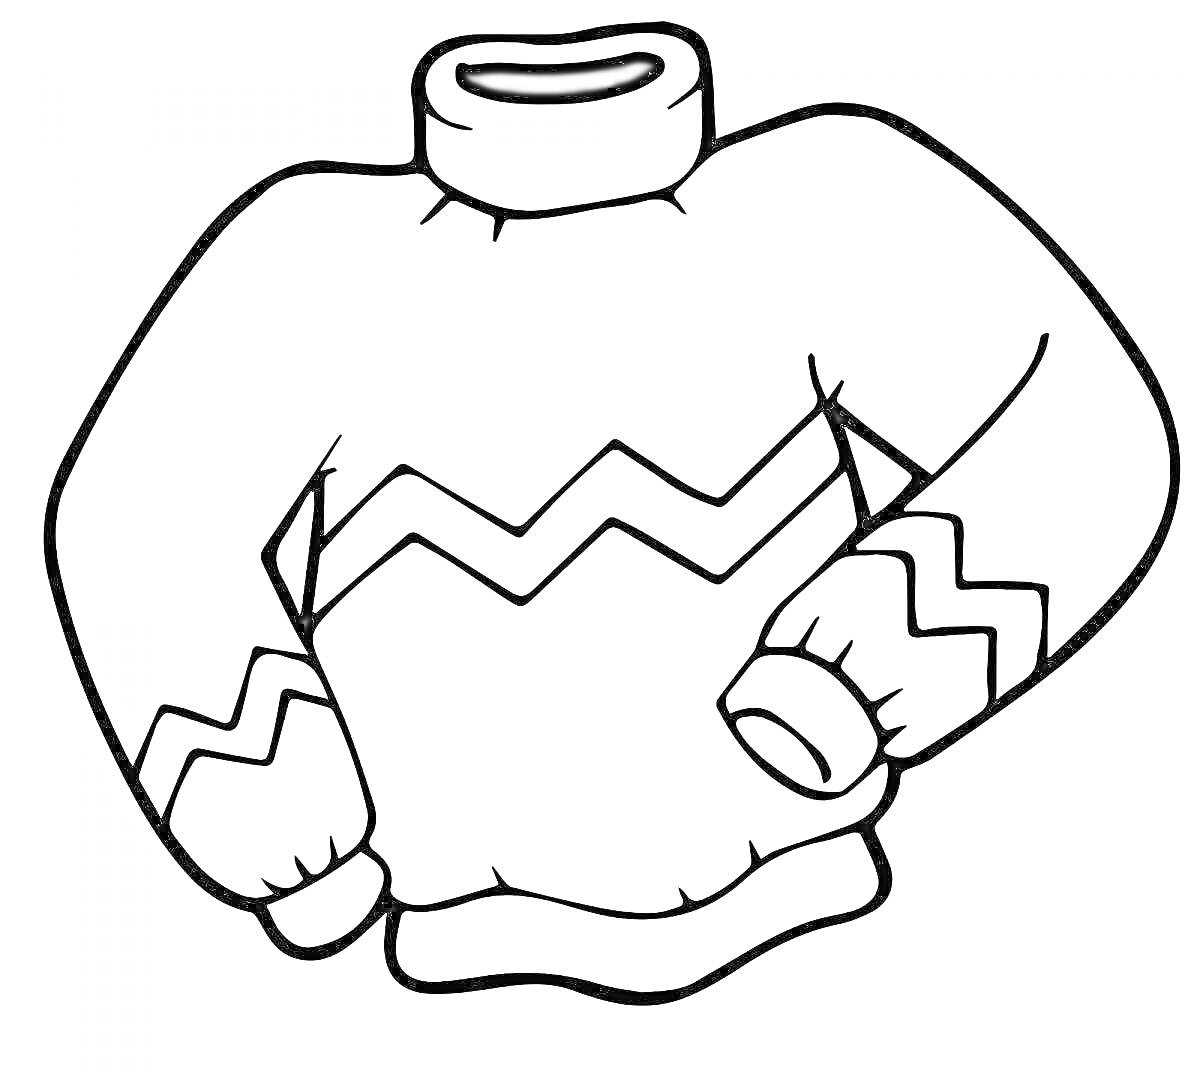 Раскраска Кофта с зигзагообразным узором на теле и рукавах